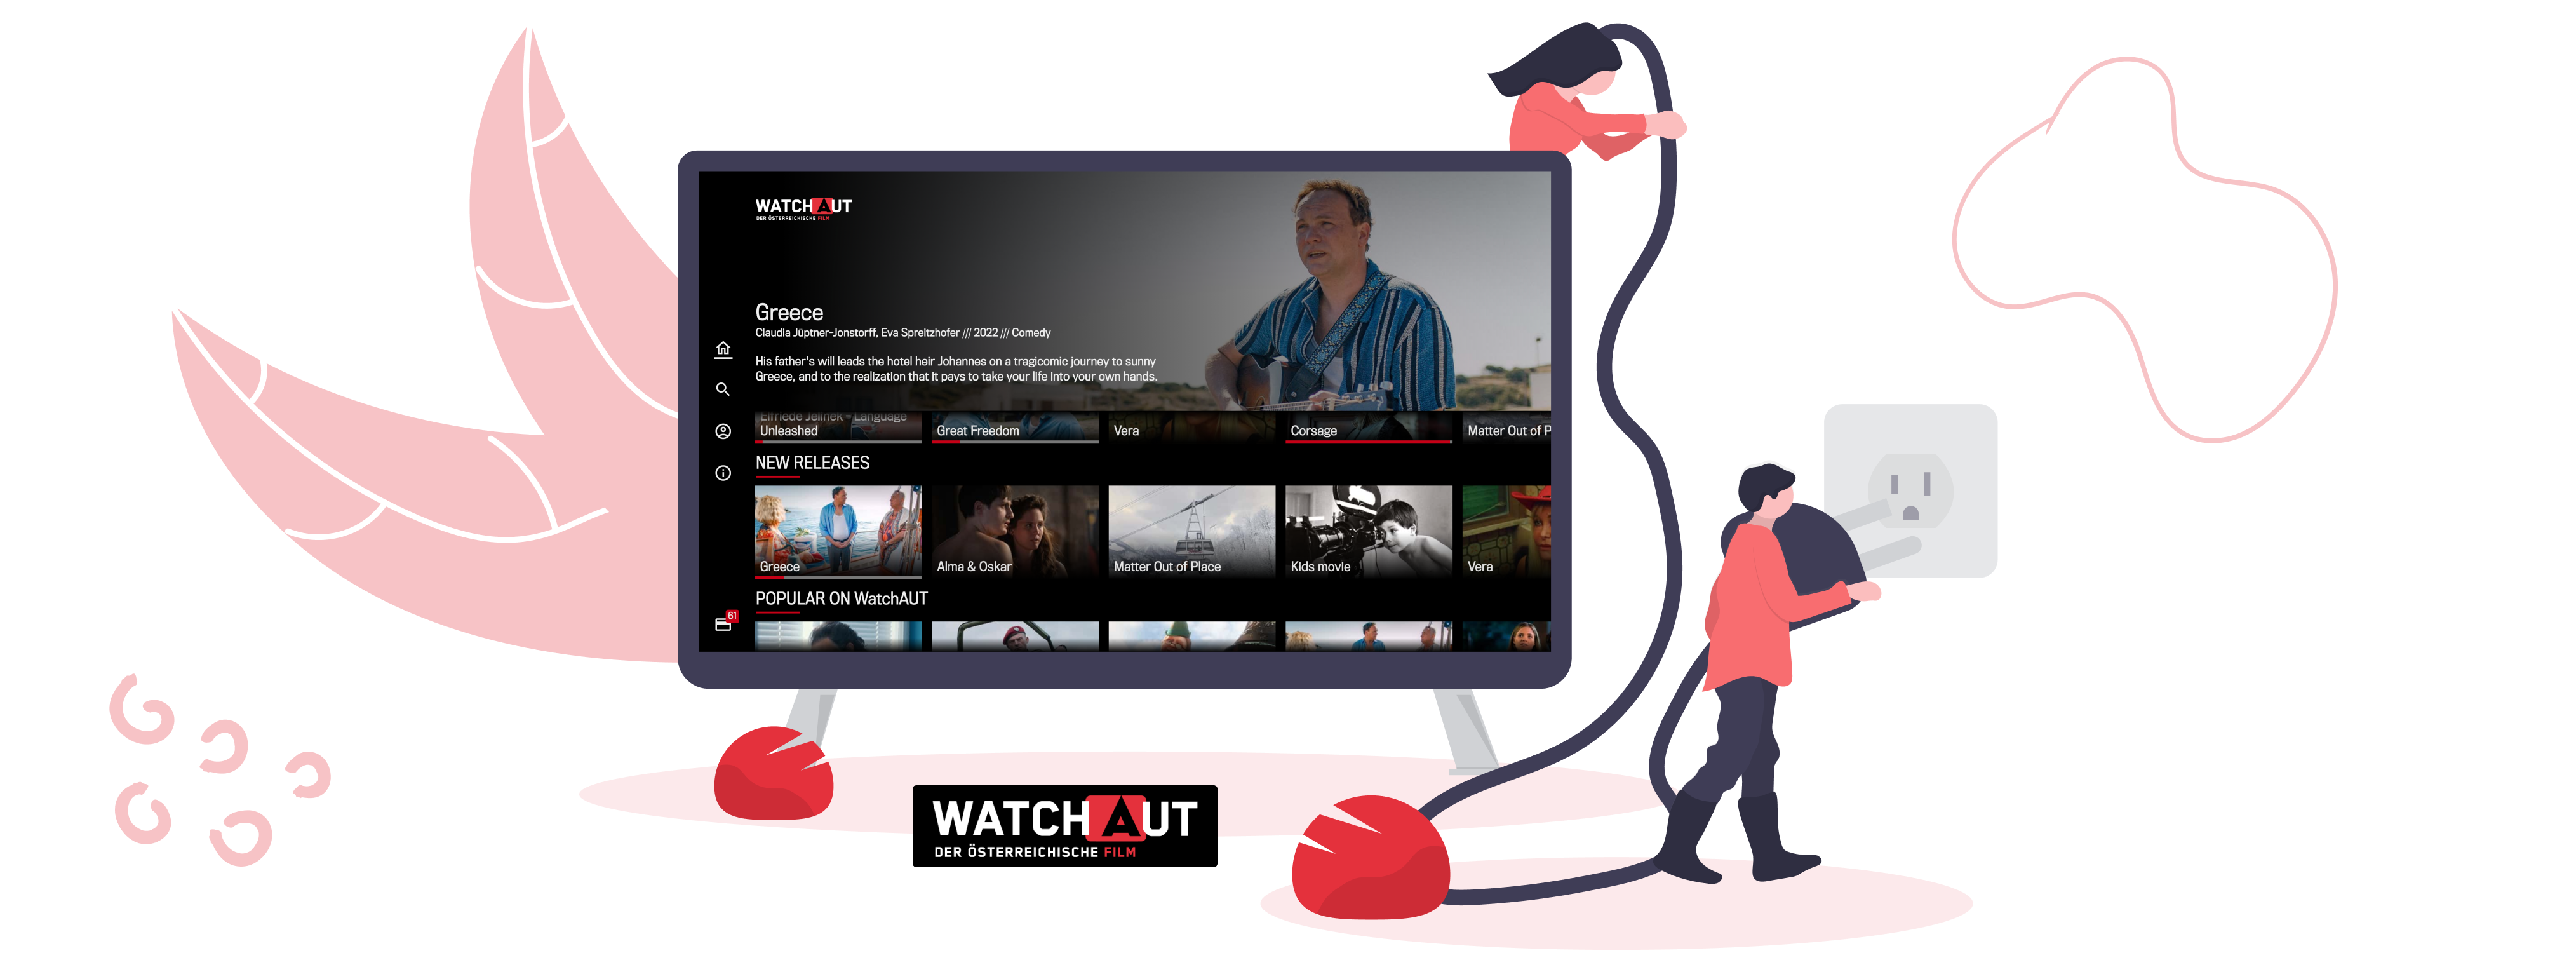 Promo Image für WatchAUT Streaming Plattform von bitsfabrik